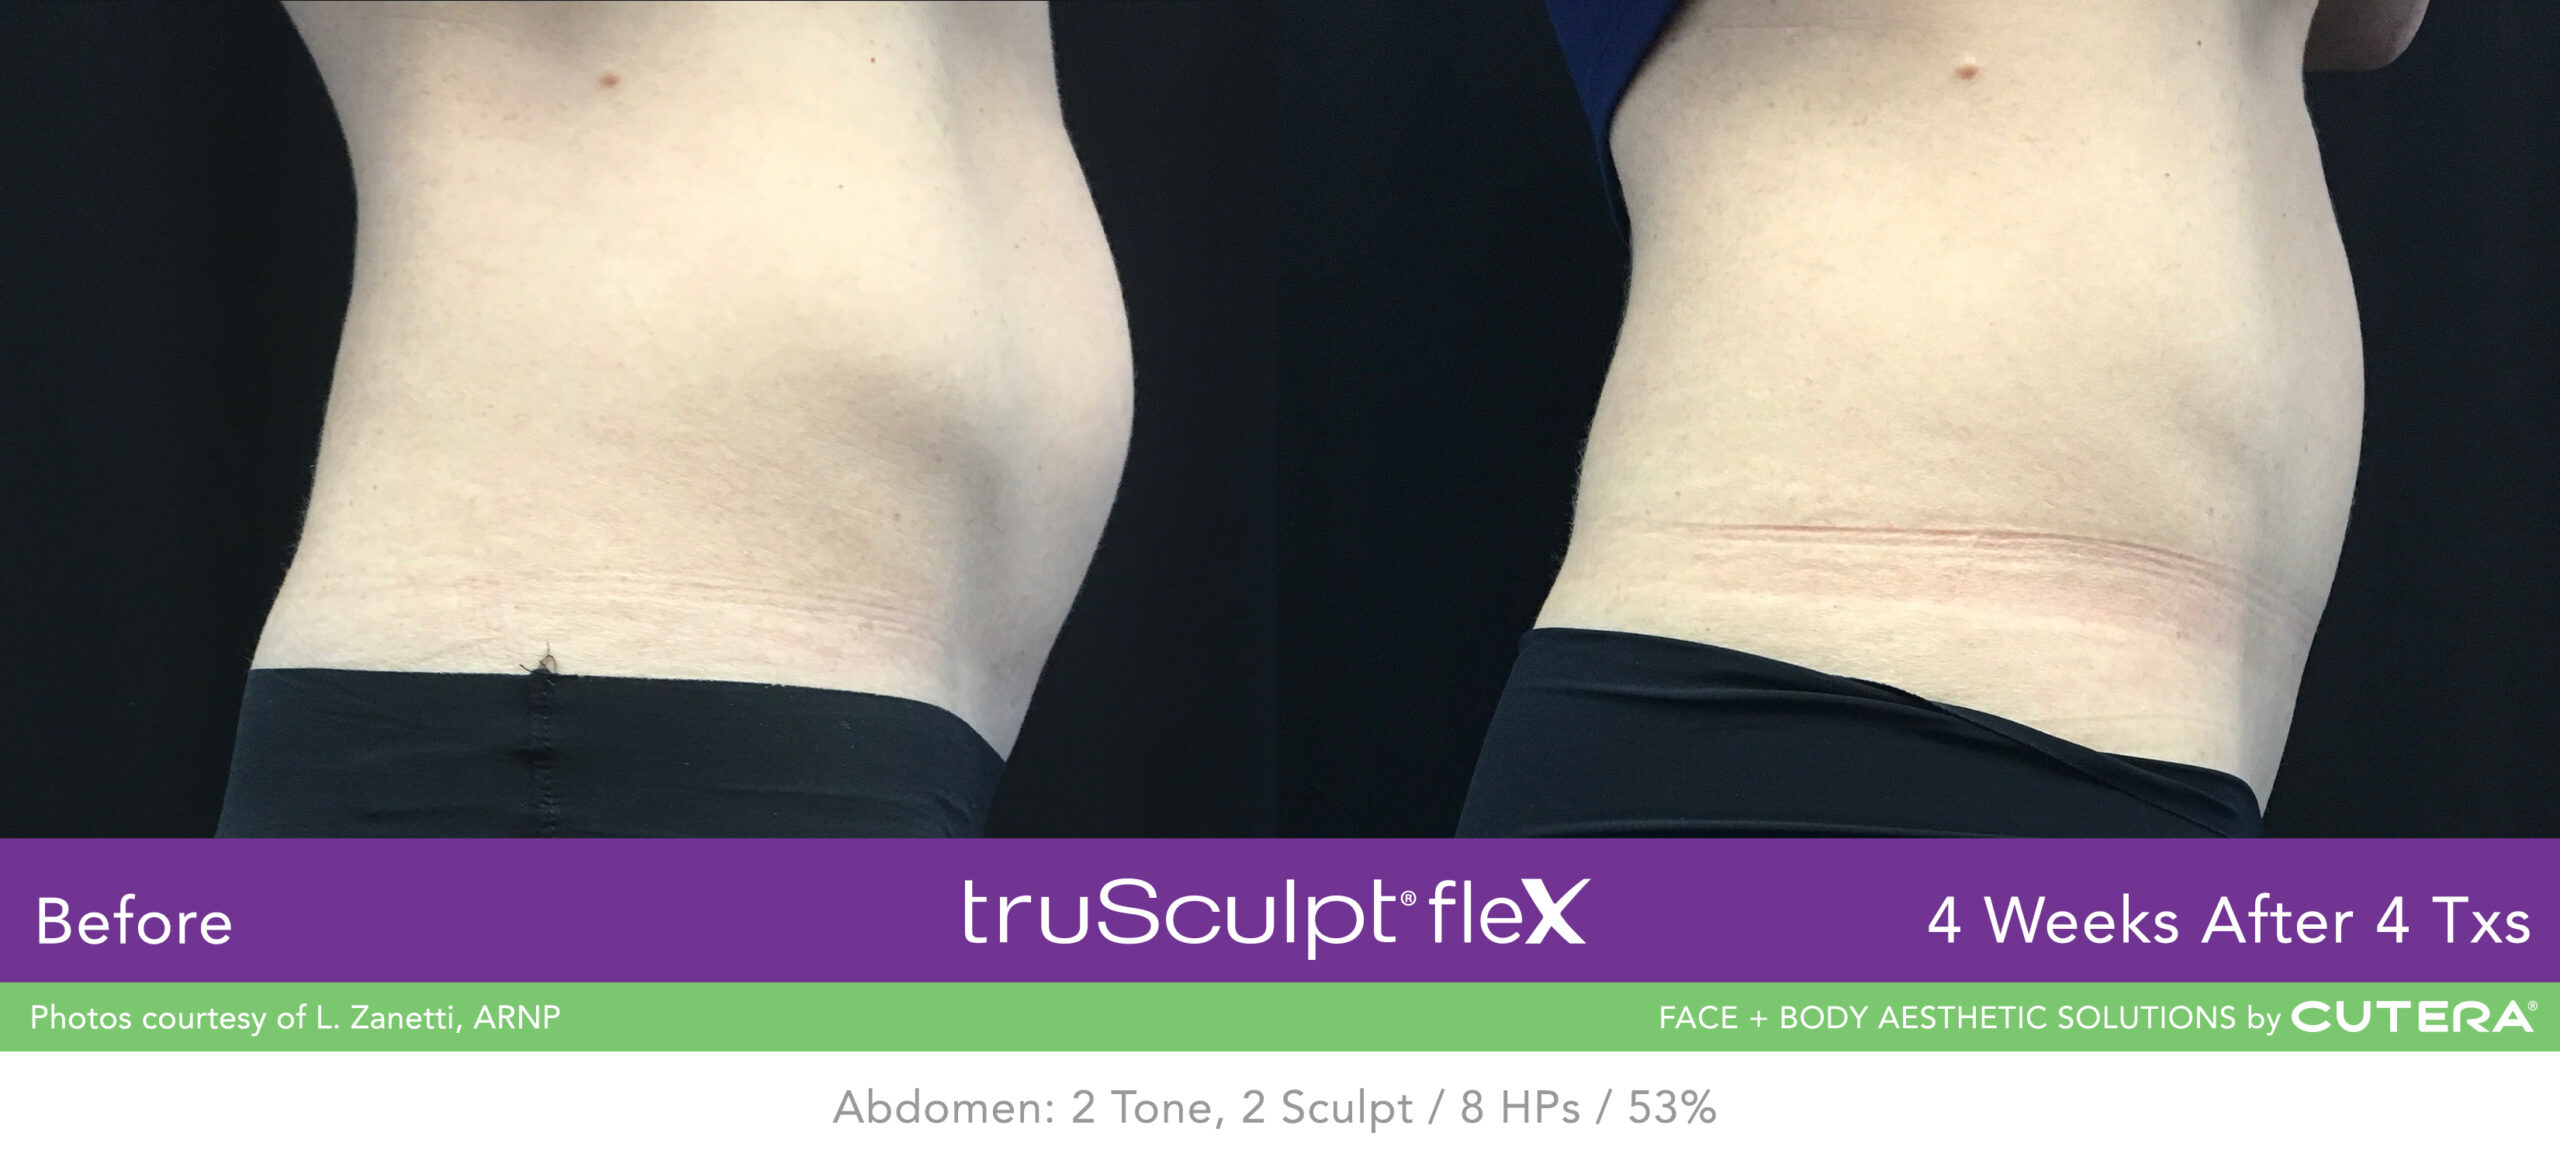 Trusculpt Flex – Before & After – Abdomen 7